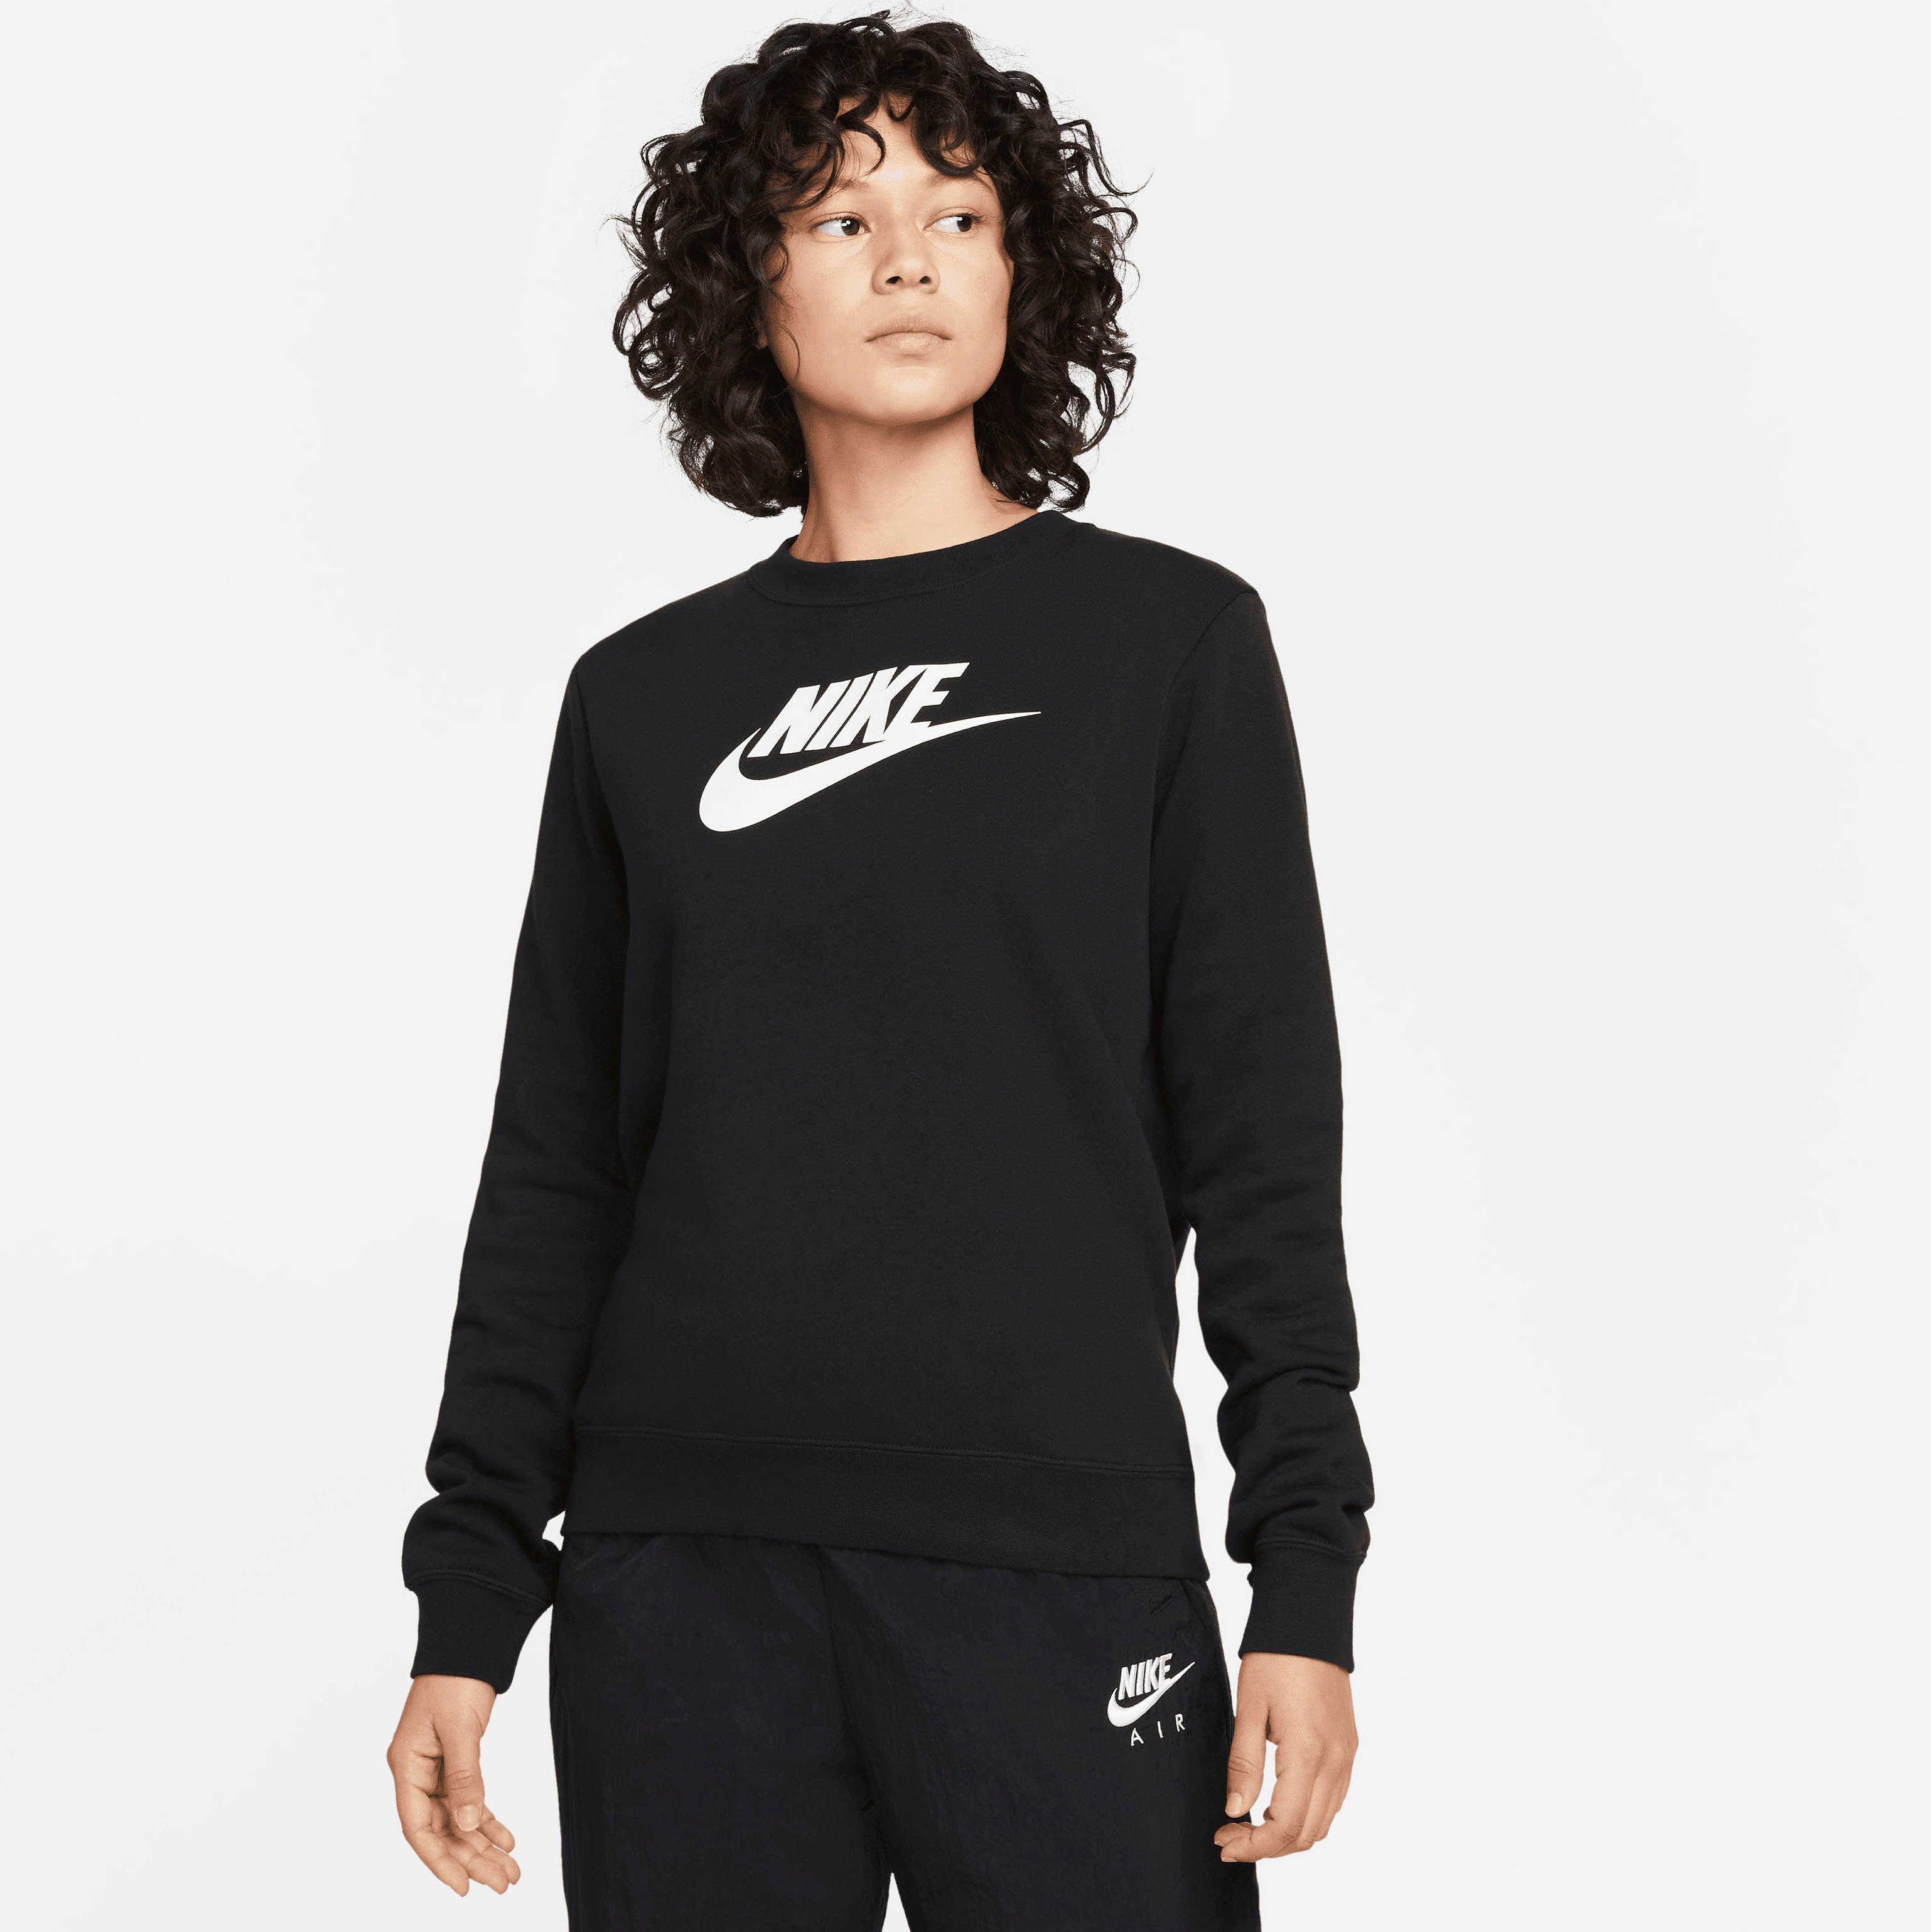 Logo Crew-Neck Nike Club BLACK/WHITE Sweatshirt Fleece Sweatshirt Women's Sportswear